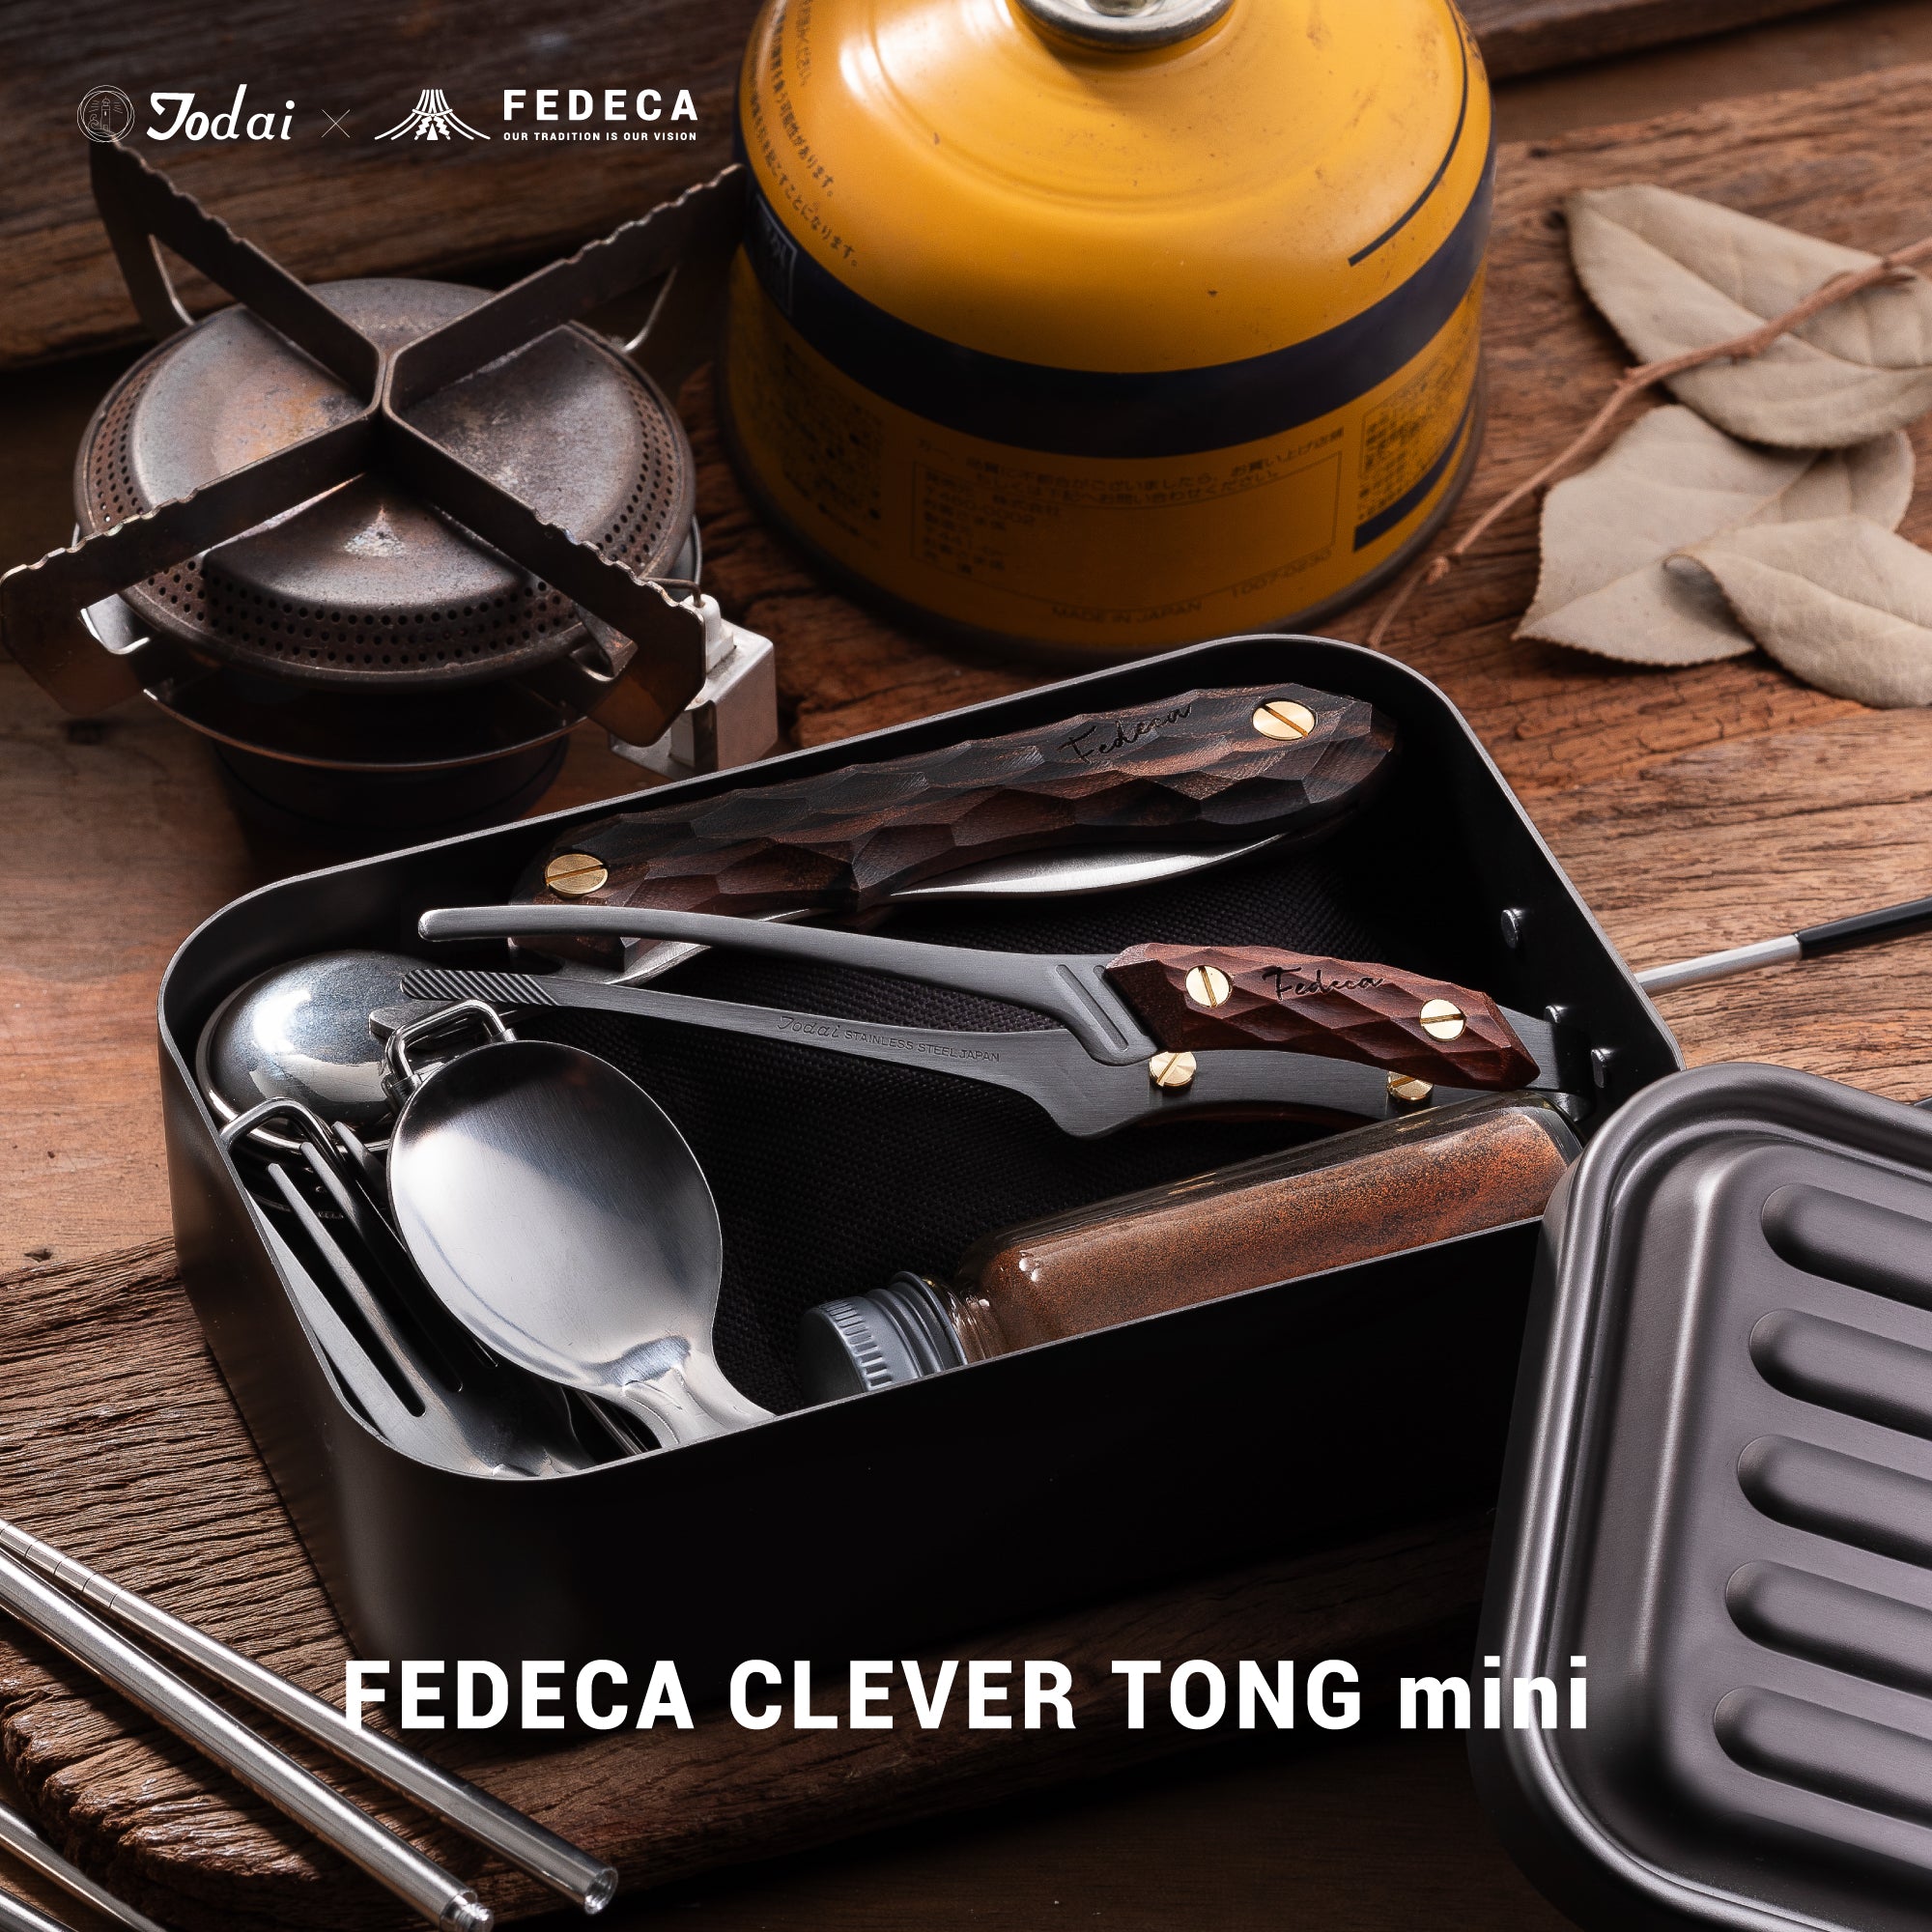 【予約】FEDECA CLEVER TONG mini プレーン 3,960円 【6月下旬以降順次発送 】